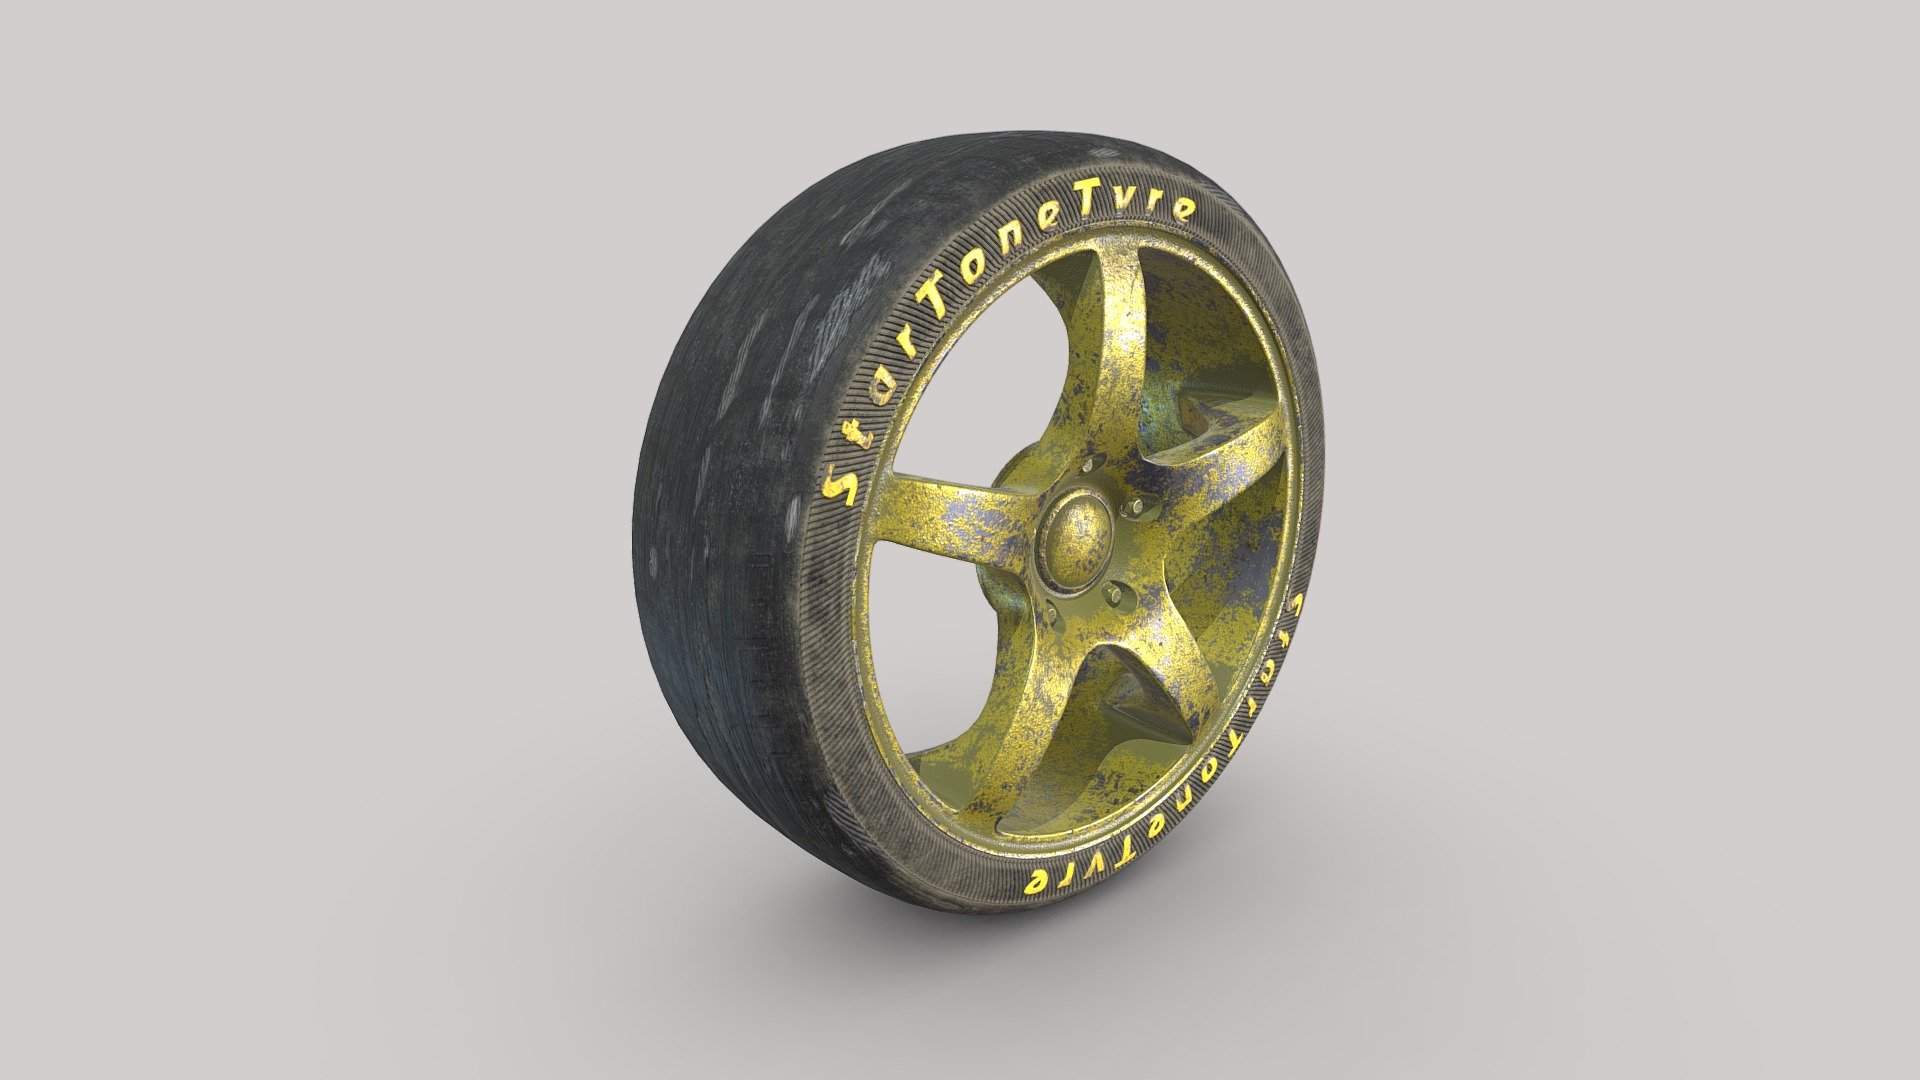 3d model-Disc + Worn tire_Dusty - Disc + Worn tire_Dusty - 3D model by StarTone 3d model